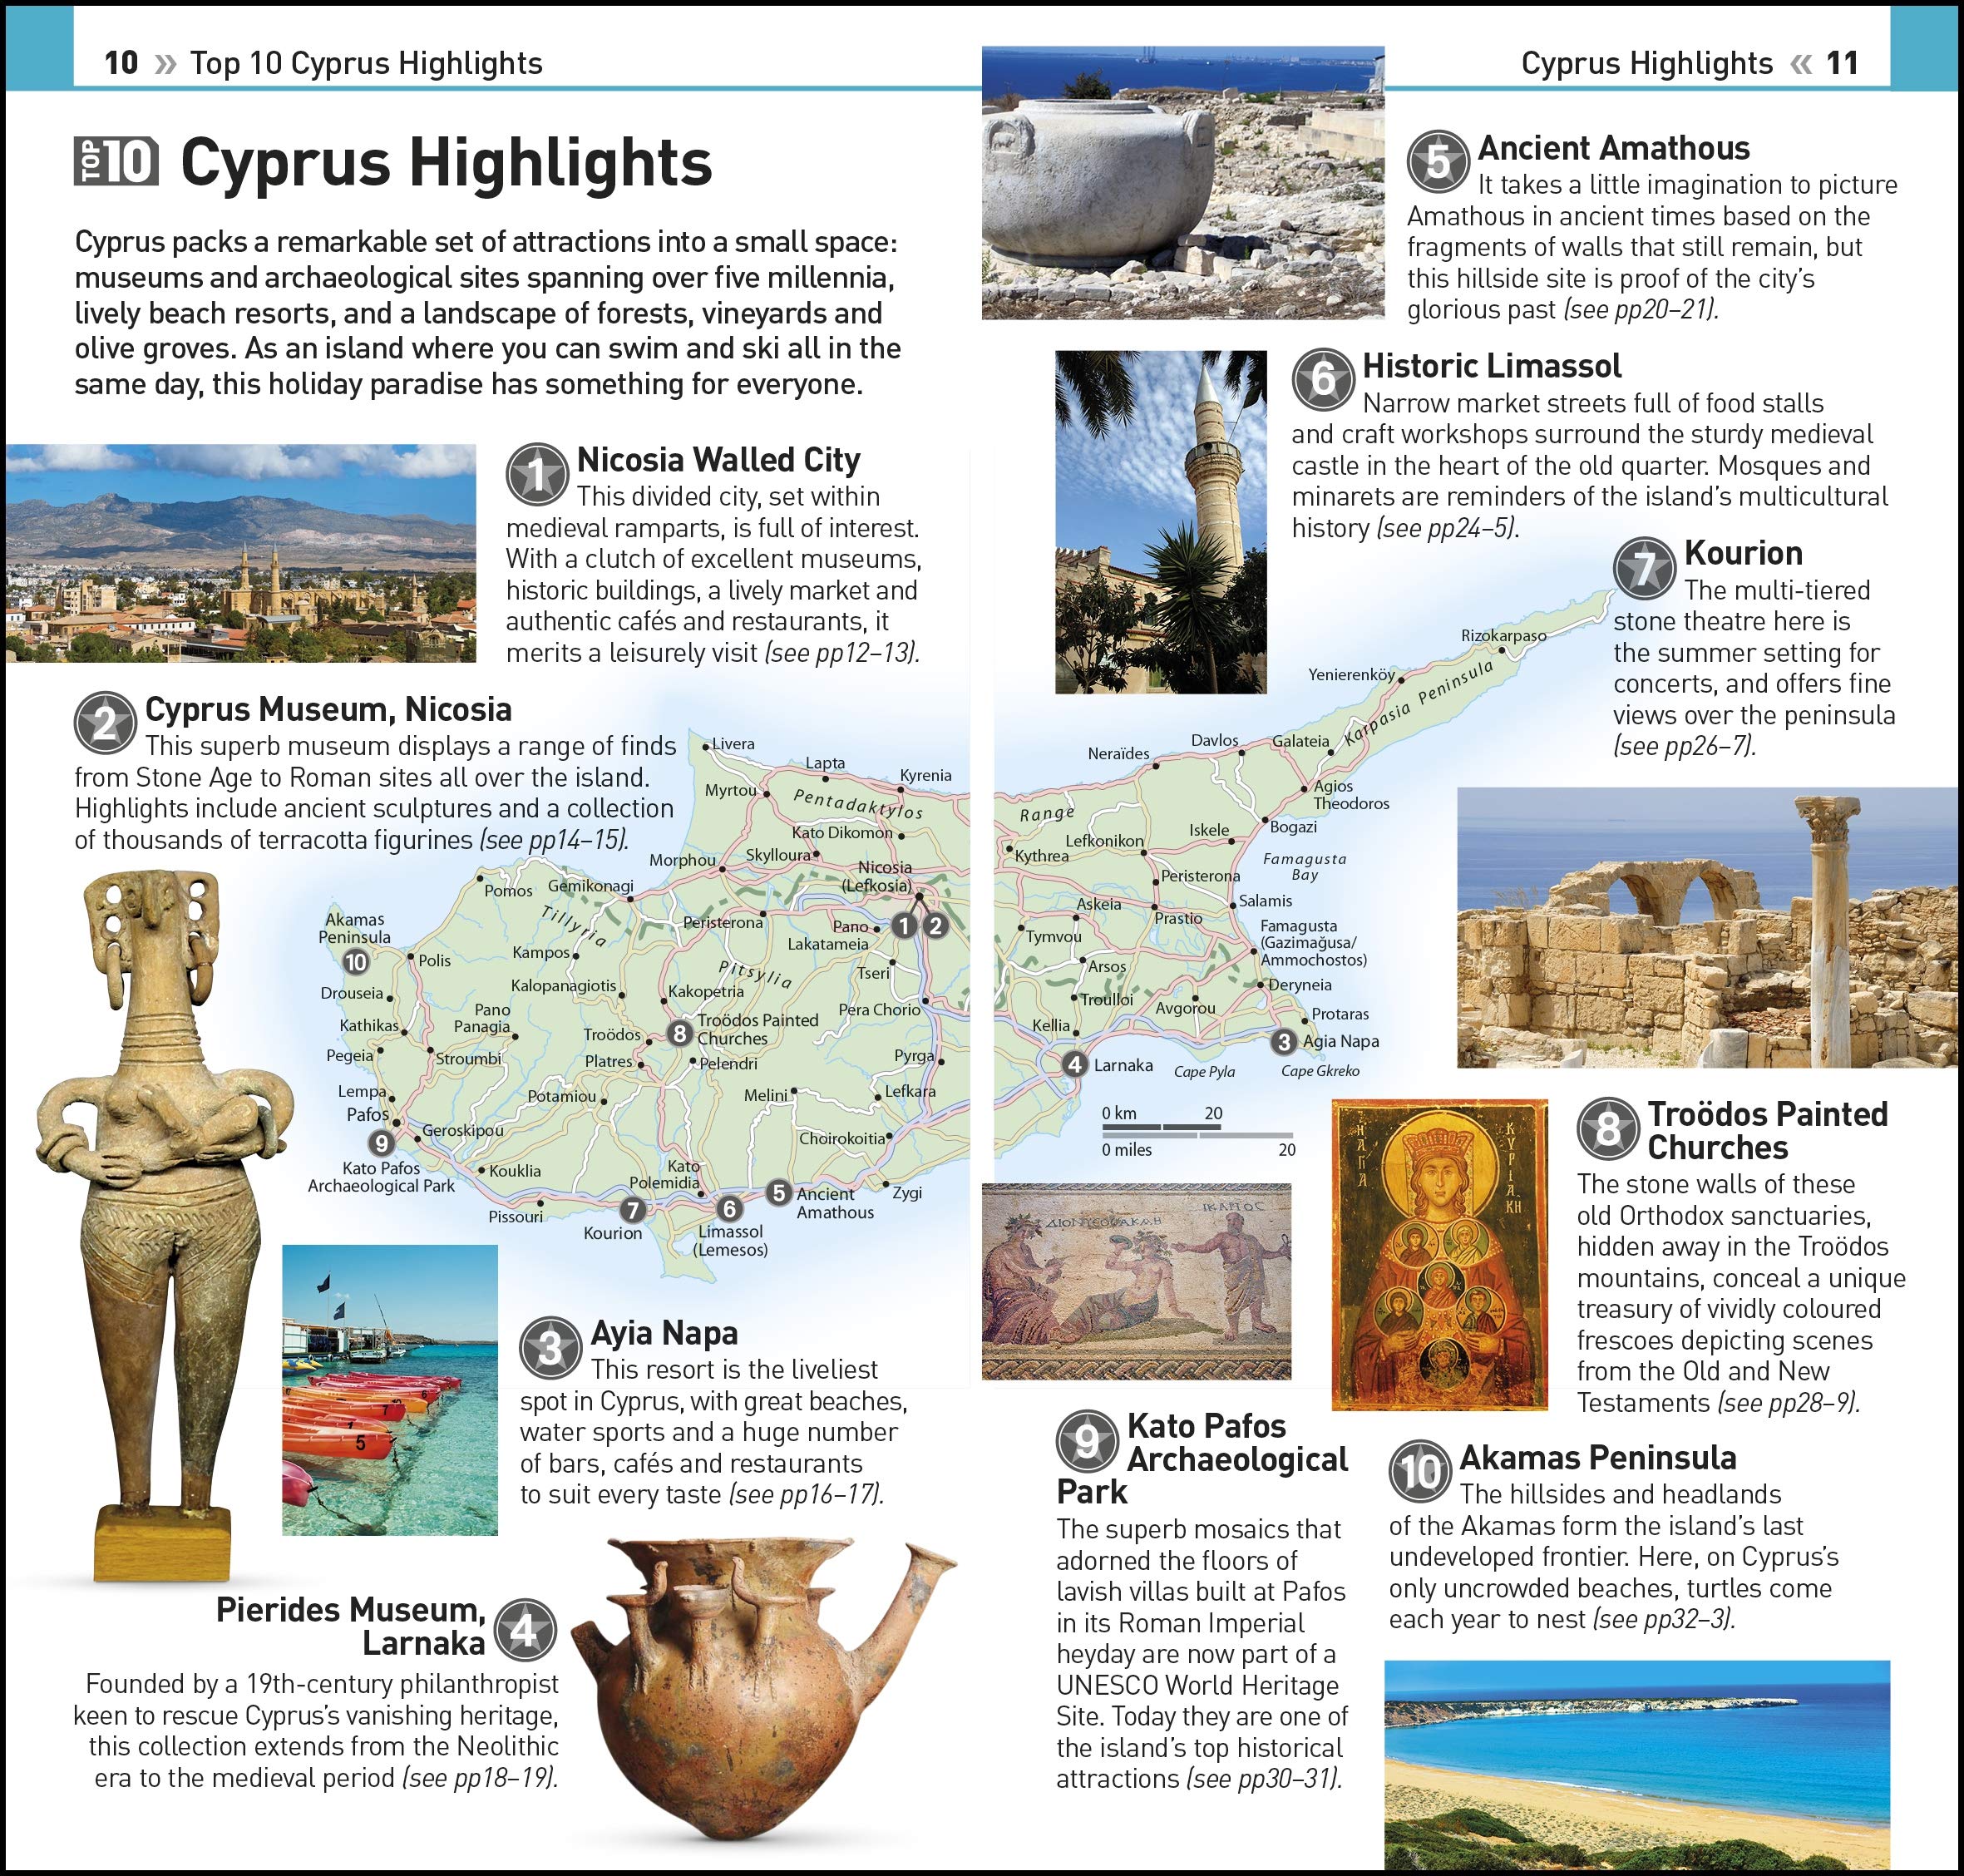 Eyewitness Top 10 Cyprus